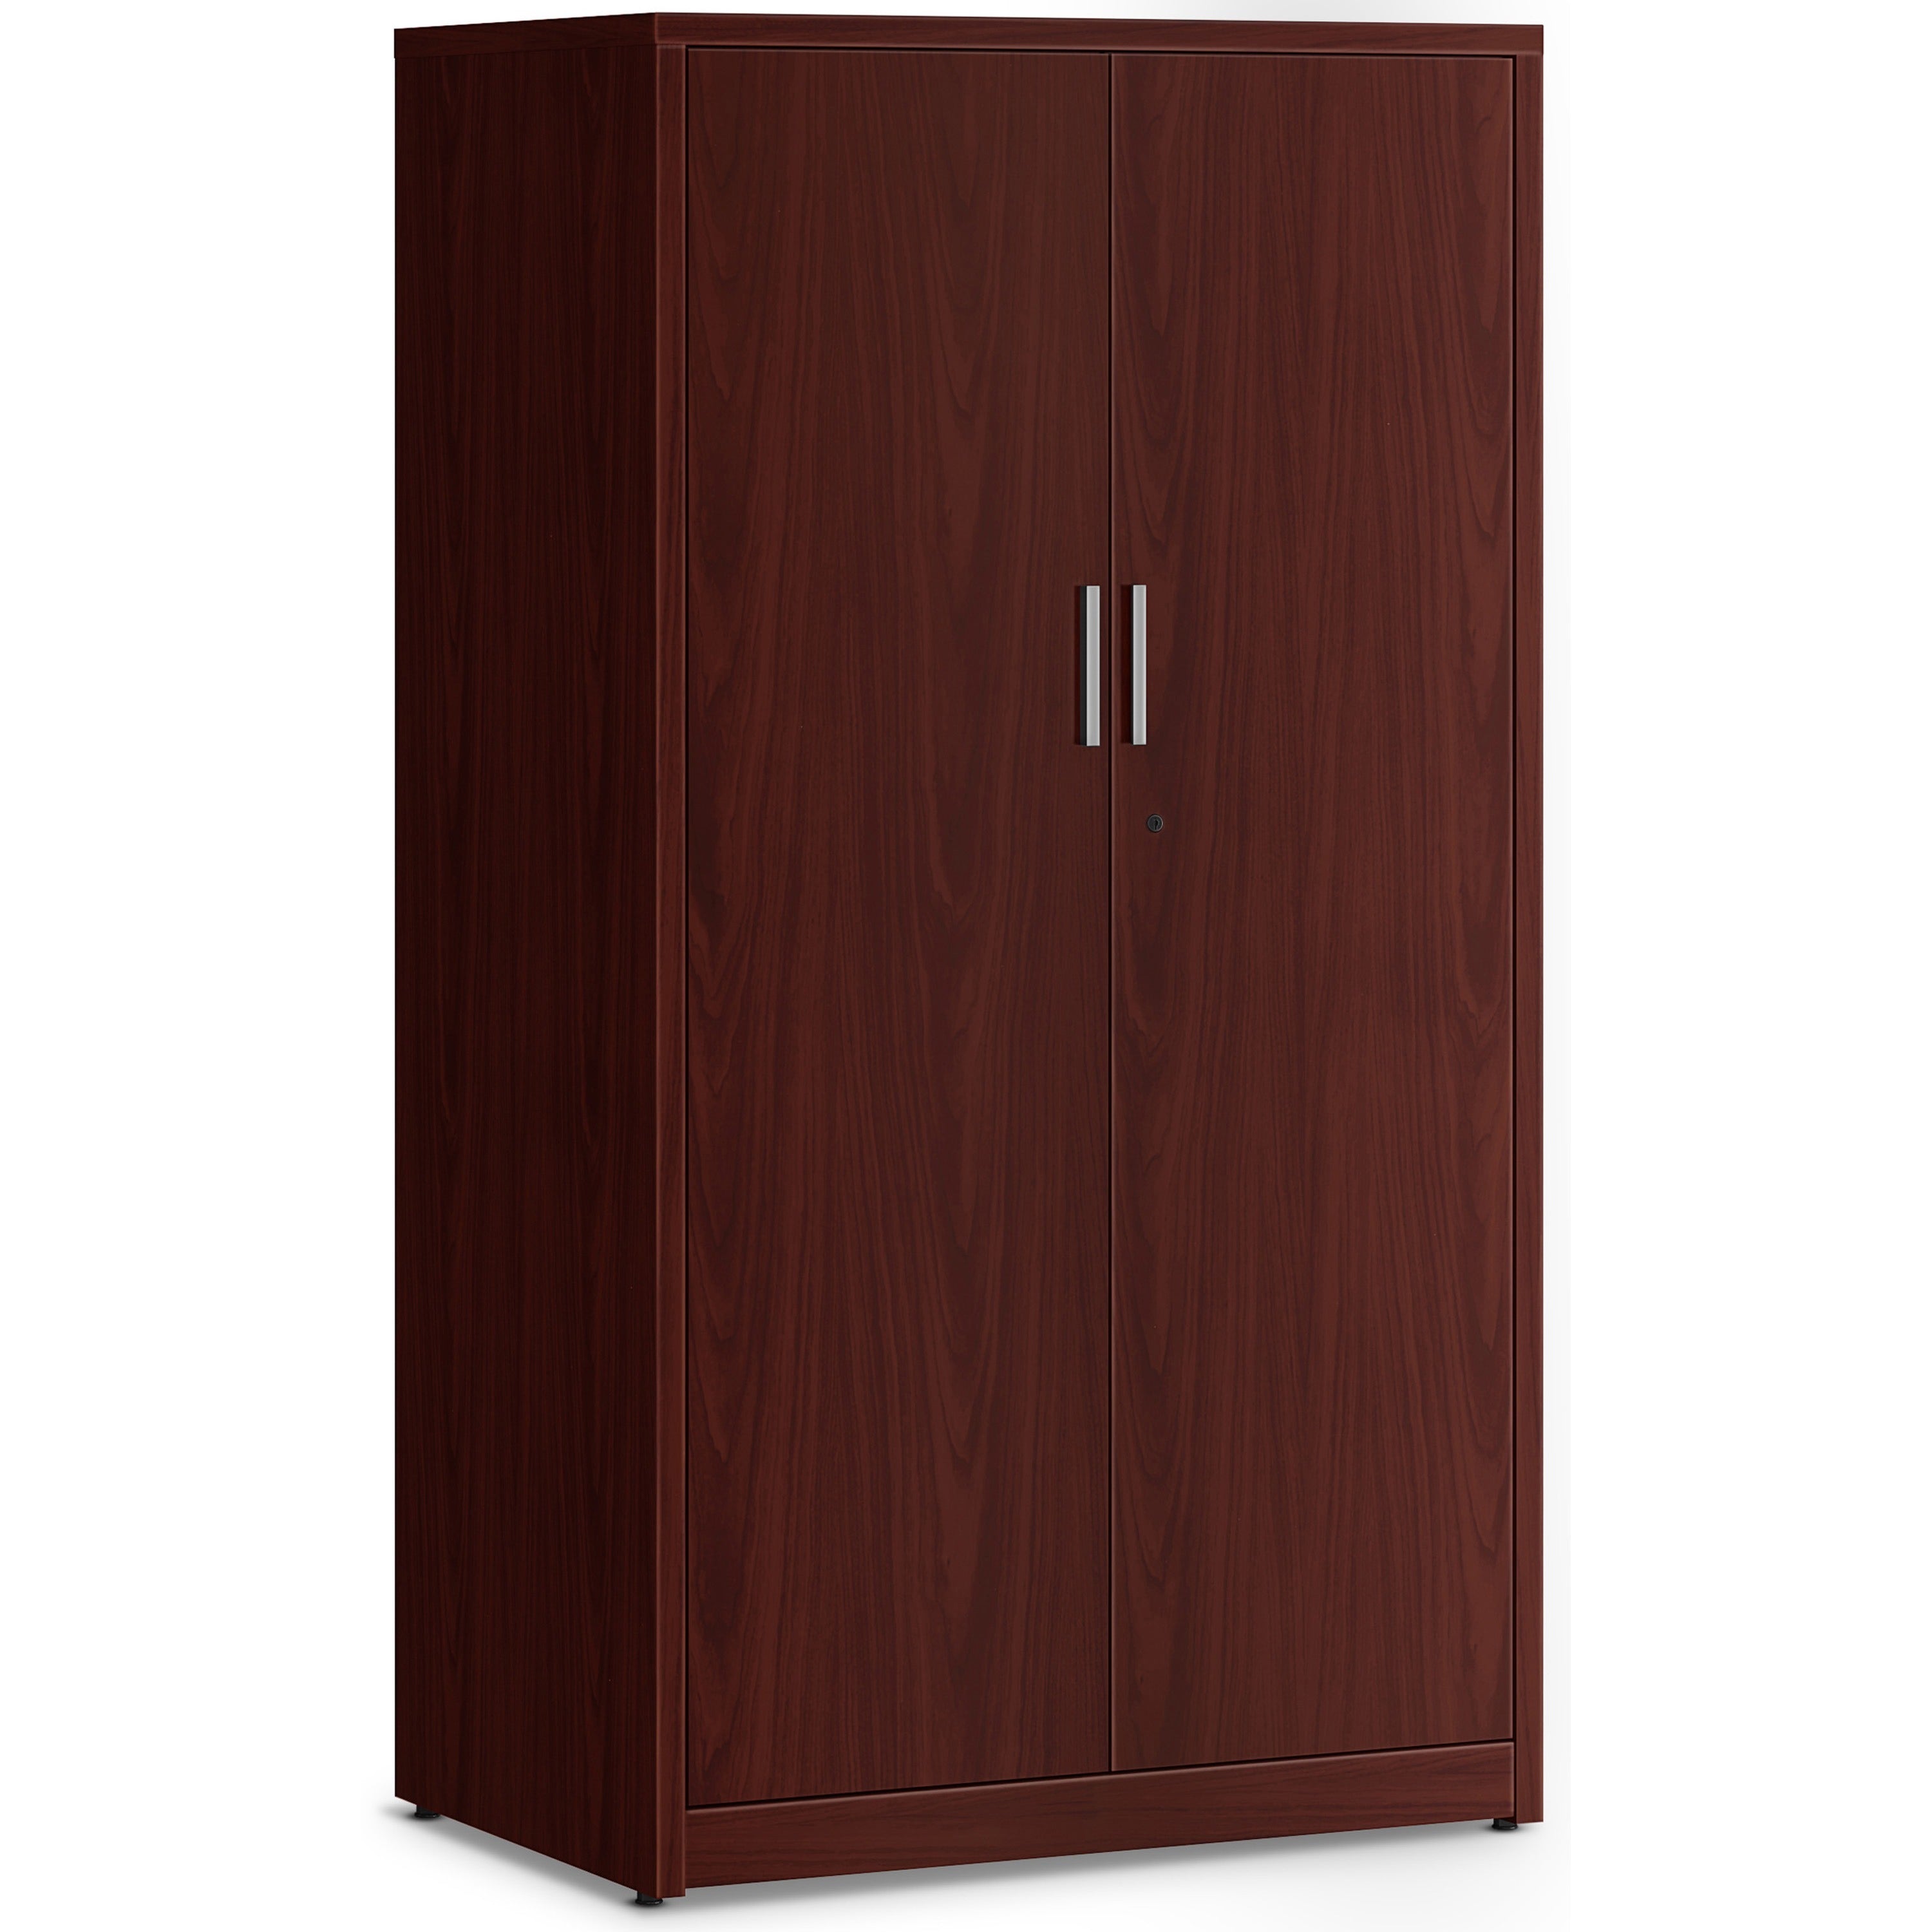 hon-10500-series-mahogany-laminate-office-desking-36-x-24666-5-shelves-3-adjustable-shelfves-finish-thermofused-laminate-tfl-mahogany-laminate_hon105299nn - 1